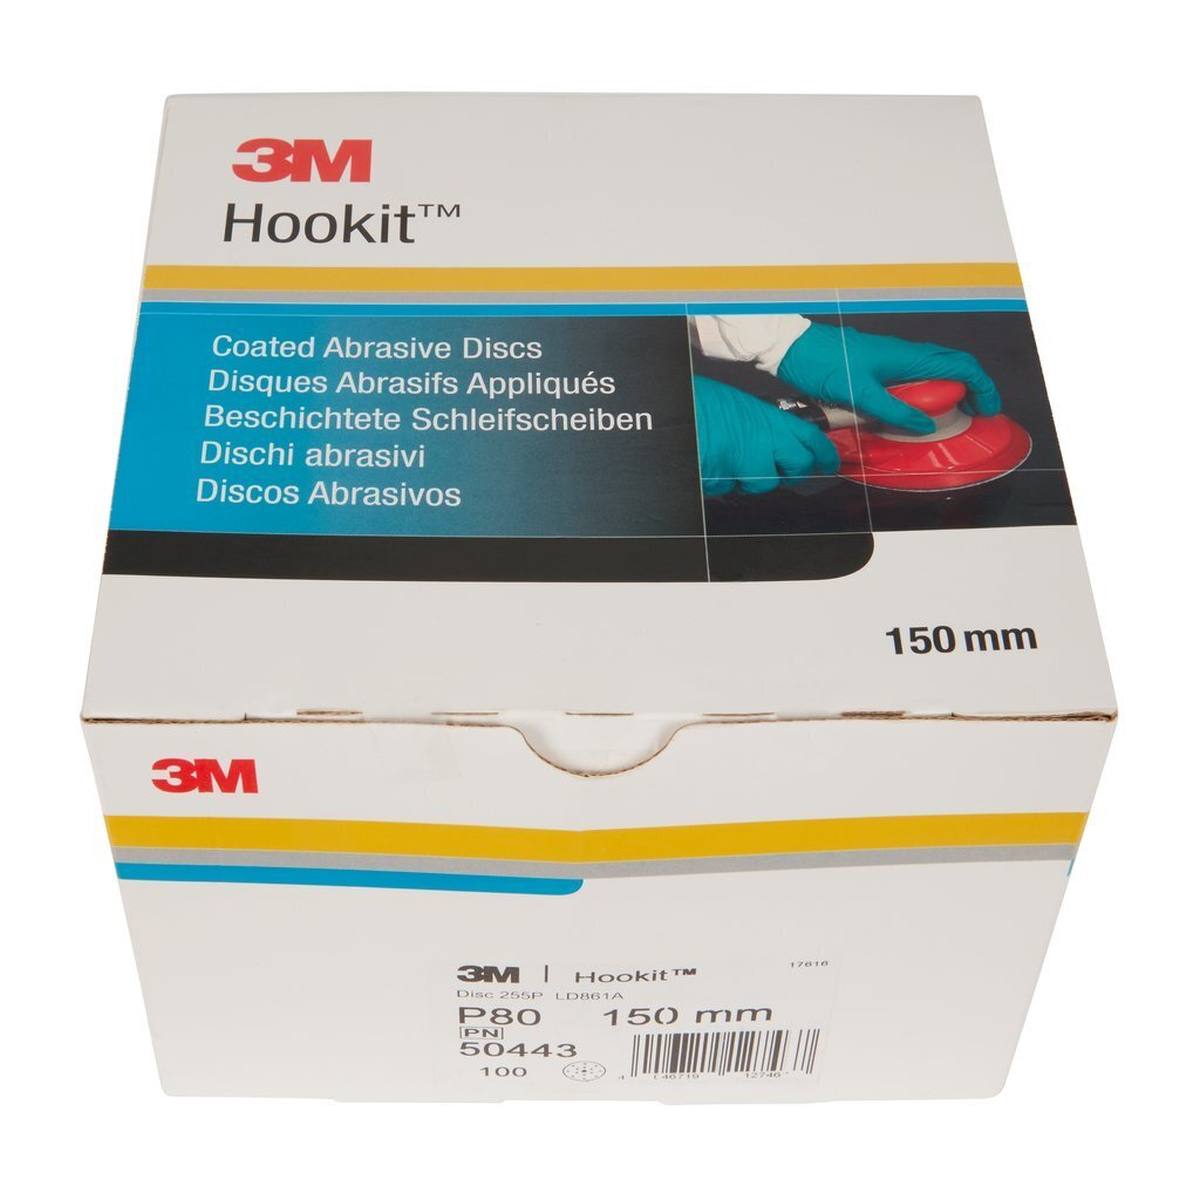 3M Hookit Gold Premium 255P+, 150 mm, P80, 15 holes #50443